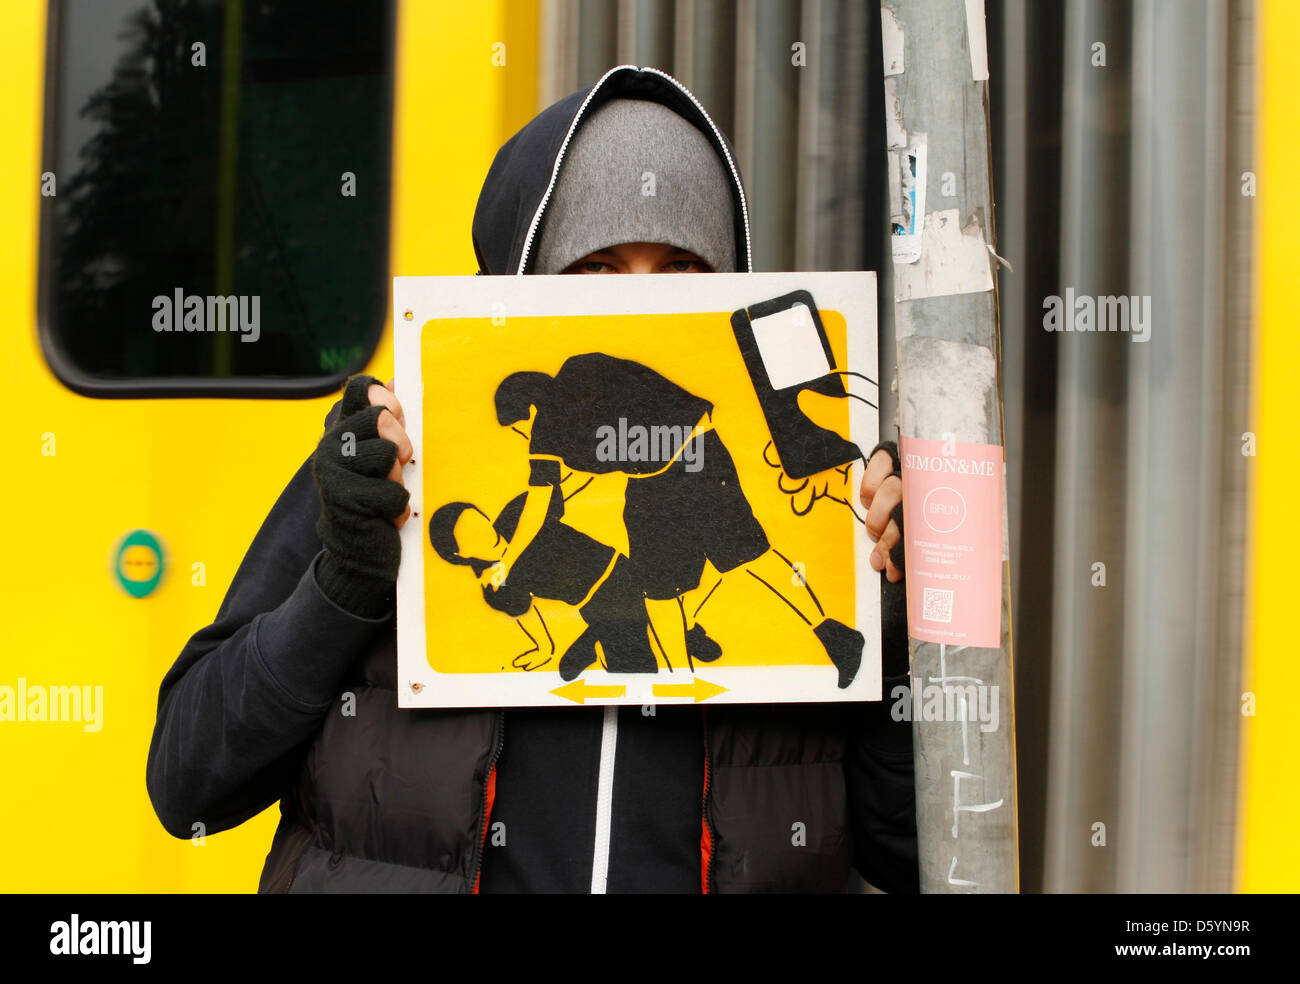 Künstler El Bocho zeigt eines seiner Piktogramme in Berlin, Deutschland, 31. Oktober 2012. Das Bild zeigt eine Szene, in der jemand geschlagen ist, während jemand die Szene mit dem Handy filmt. Strett Künstler El Bocho aus Berlin begann eine Kunstaktion auf Gewalt in den großen Städten am 31. Oktober 2012. Er beabsichtigt, mehr als 250 Piktogramme von Szenen der Gewalt in Berlin, in Aufmachungen ein Stockfoto